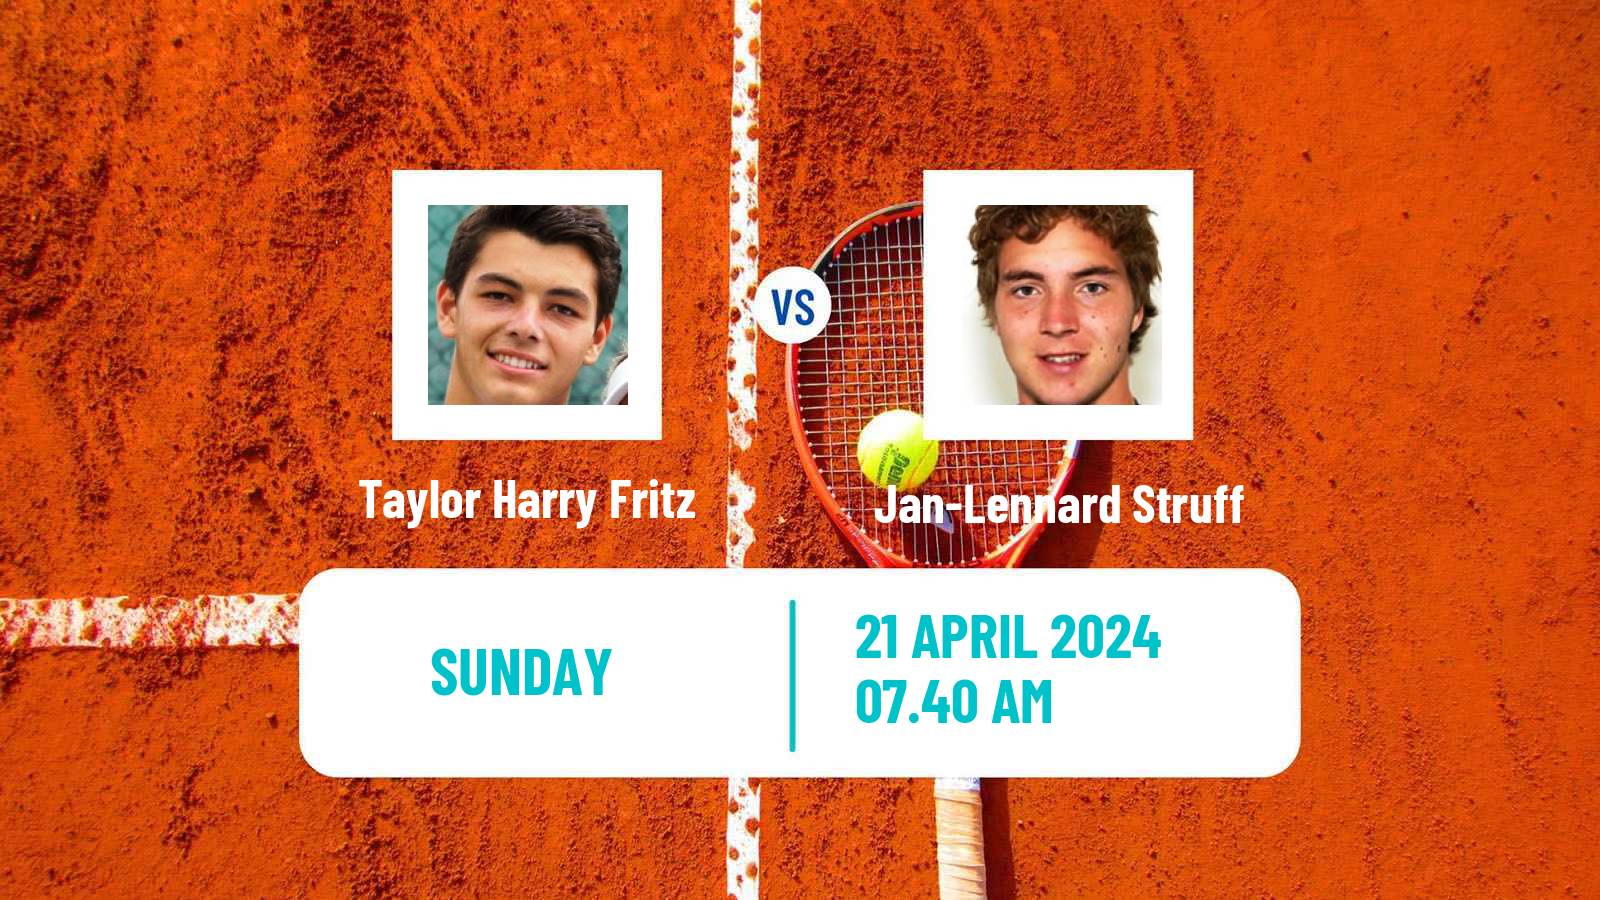 Tennis ATP Munich Taylor Harry Fritz - Jan-Lennard Struff